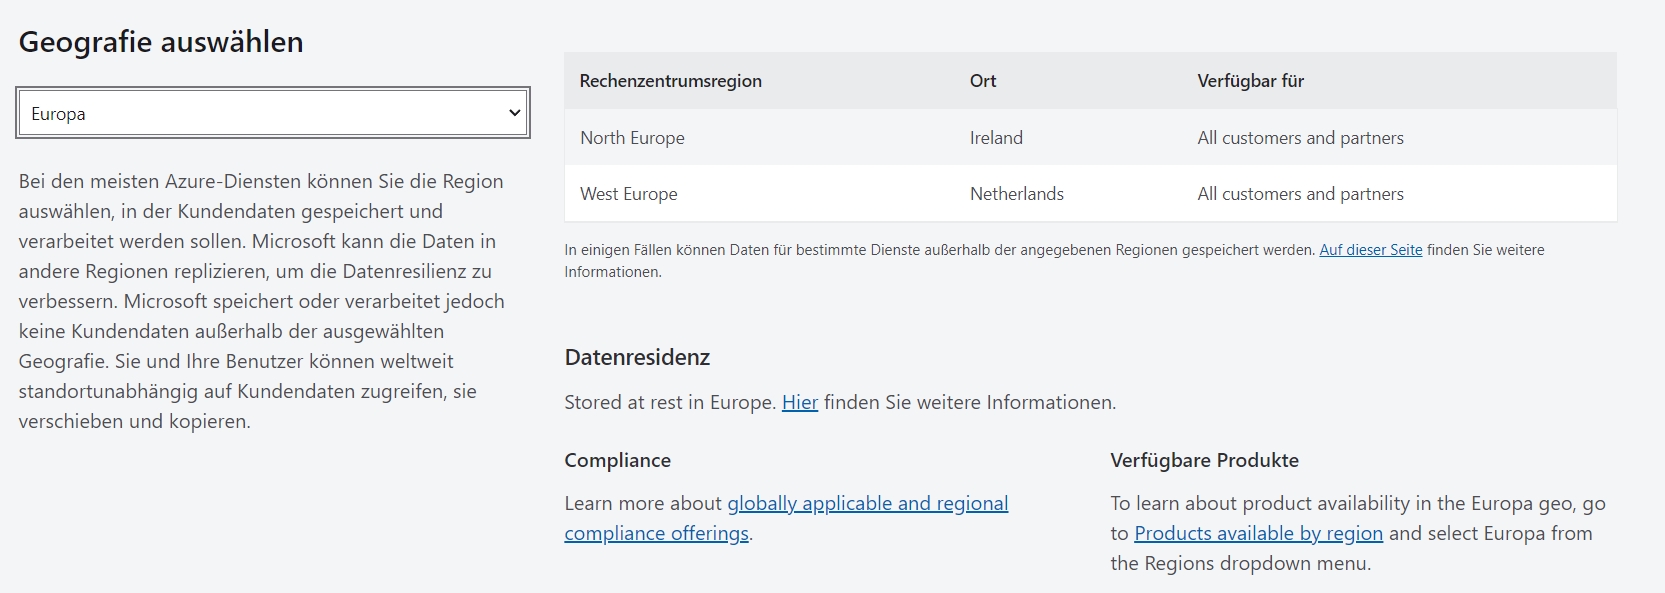 Microsoft bietet eine Übersicht der Dienste, die bereits jetzt ihre Daten in der EU speichern.